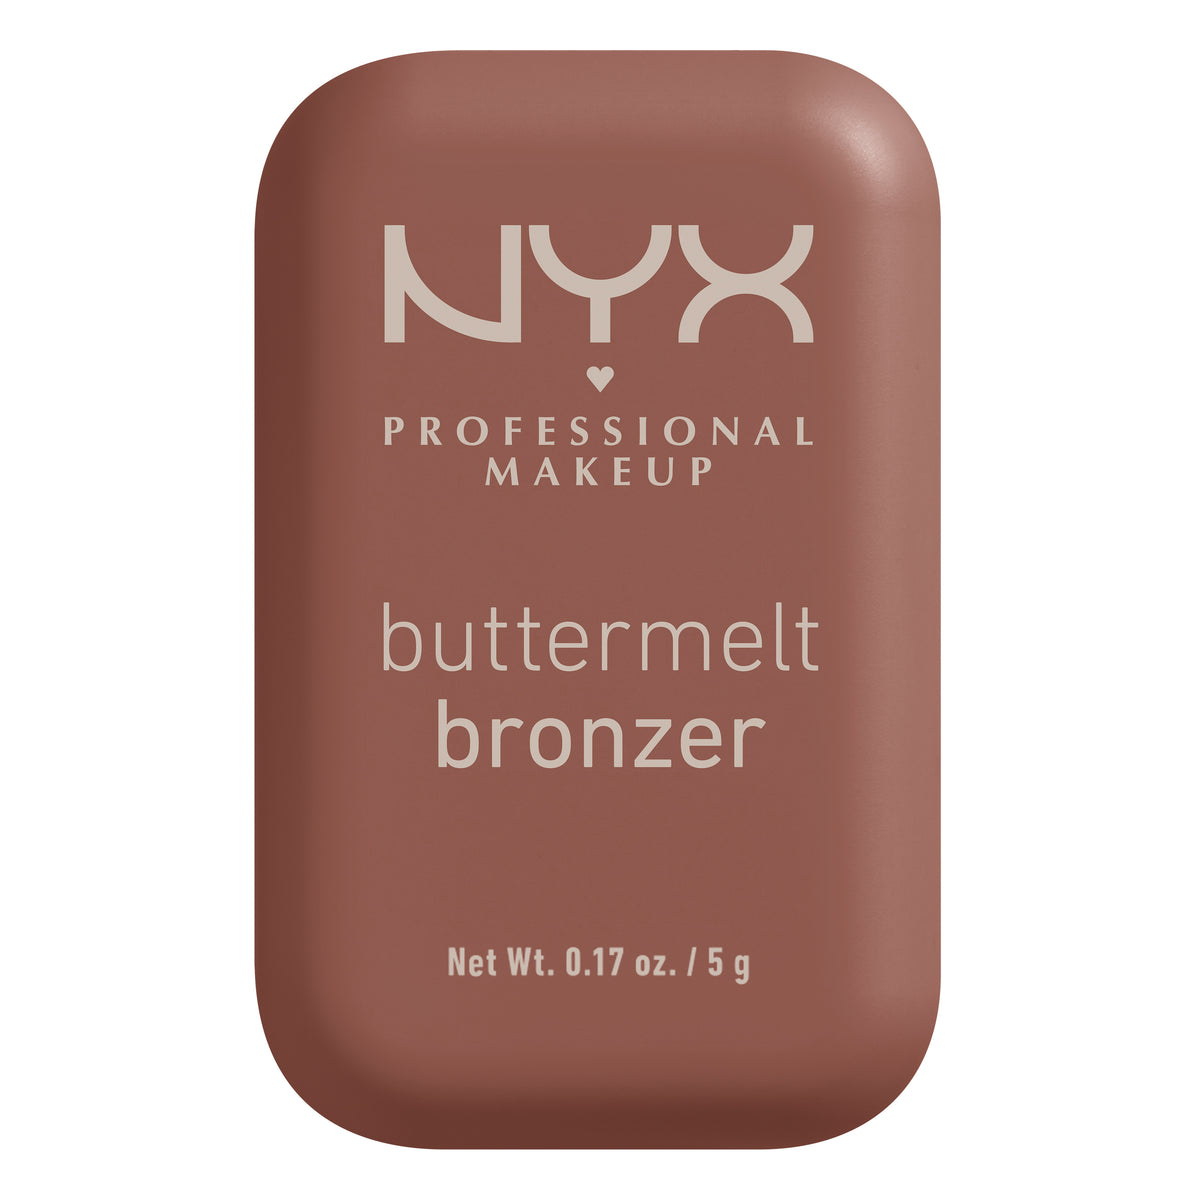 BUTTERMELT BRONZER - NYX PROFESSIONAL MAKEUP